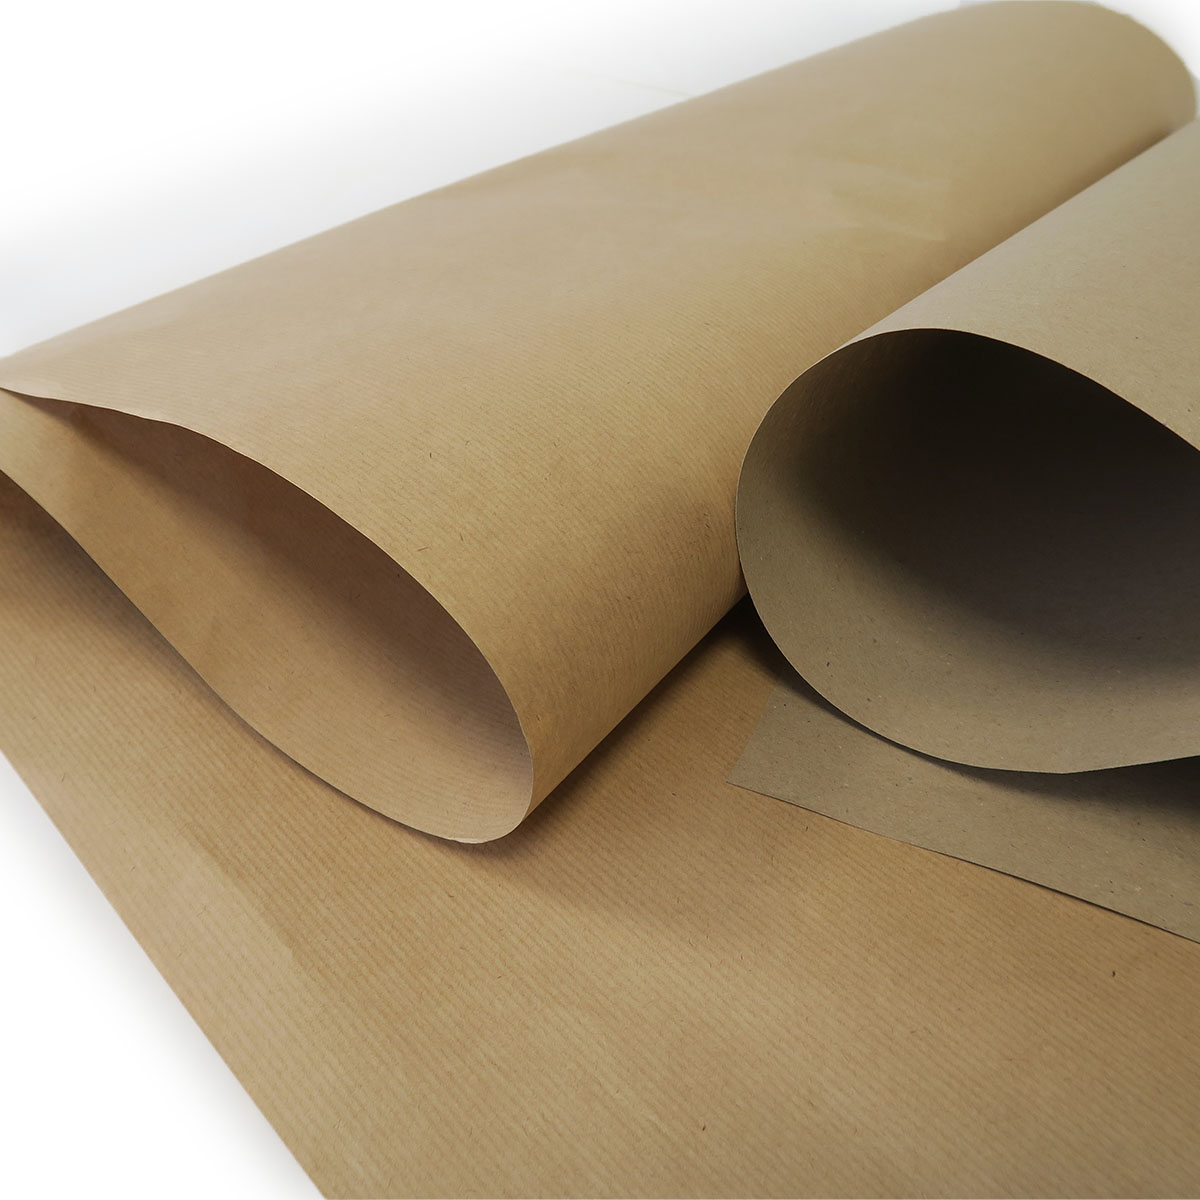 Papier kraft brun en rouleau 90g/m²